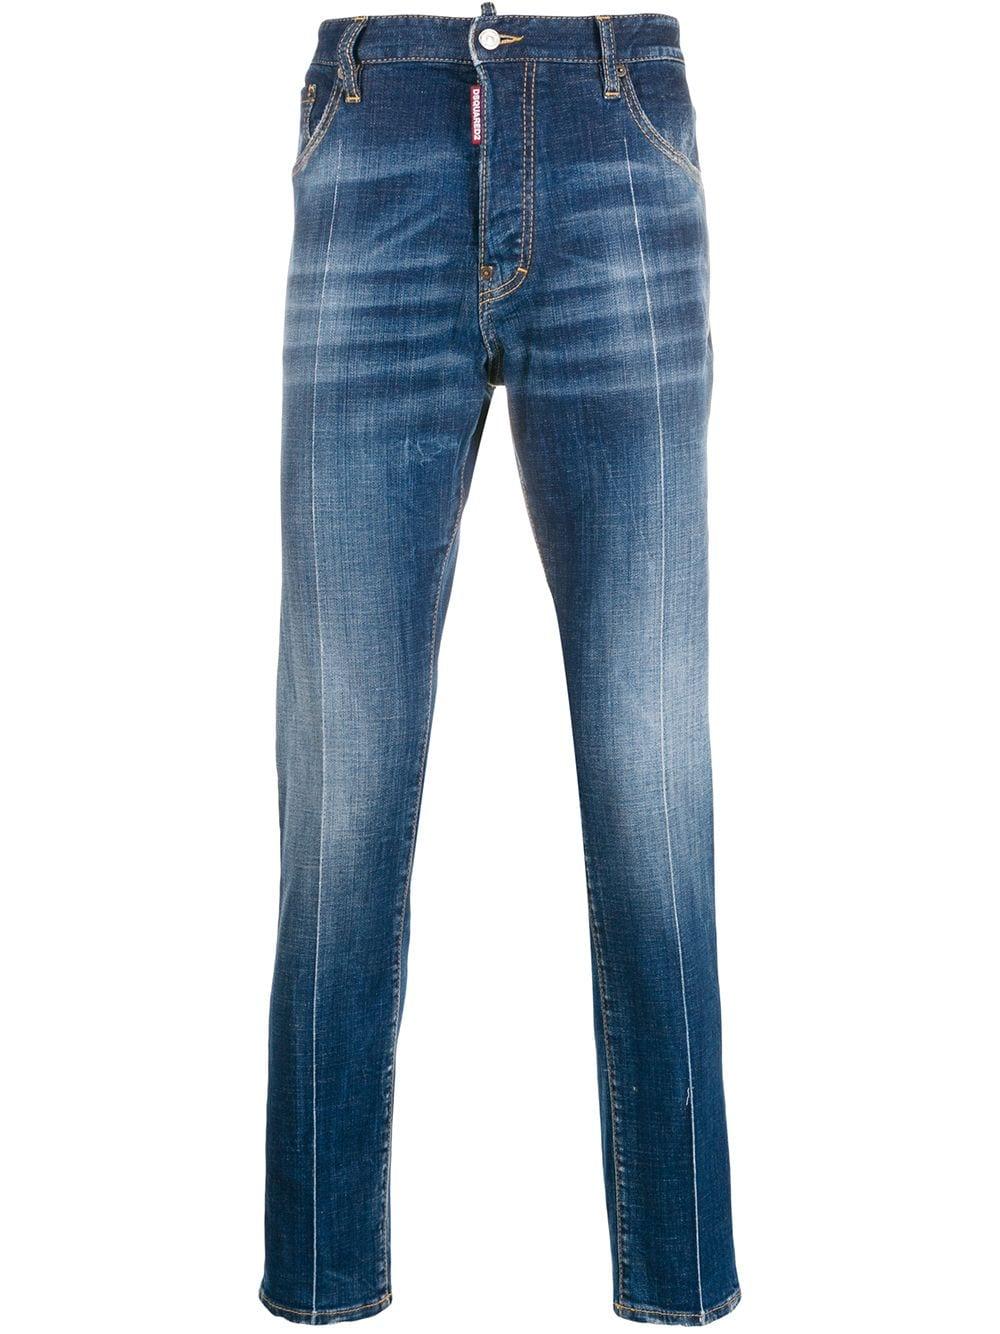 DSquared² Denim James Dean Slim-fit Jeans in Blue for Men - Lyst